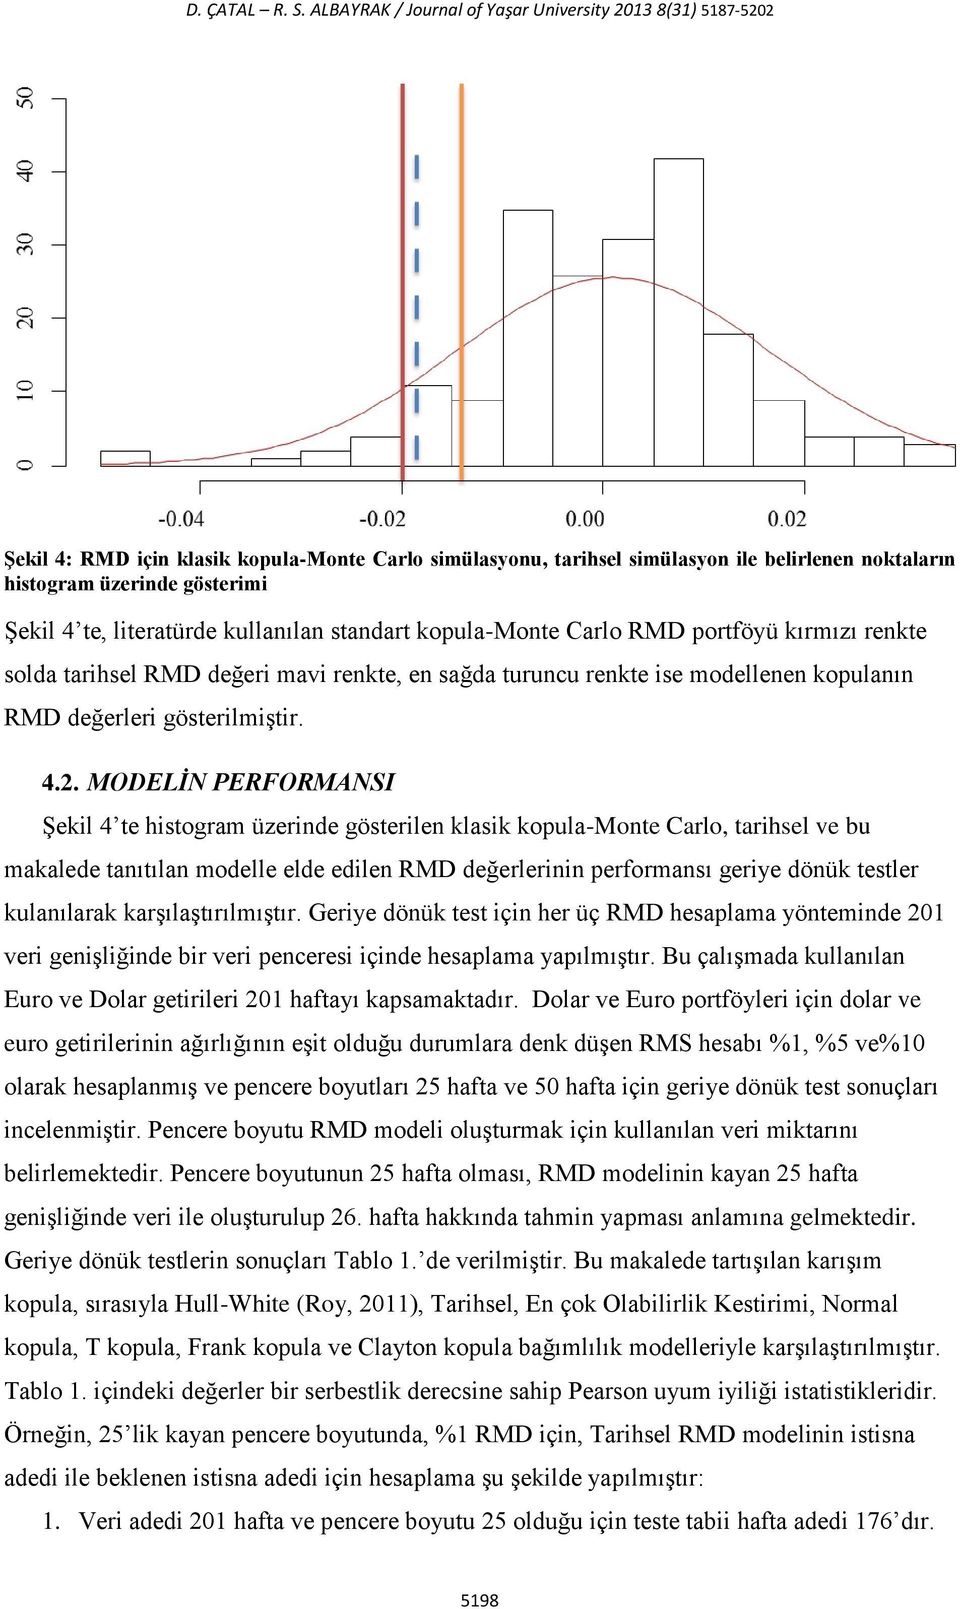 te, literatürde kullanılan standart kopula-monte Carlo RMD portföyü kırmızı renkte solda tarihsel RMD değeri mavi renkte, en sağda turuncu renkte ise modellenen kopulanın RMD değerleri gösterilmiştir.